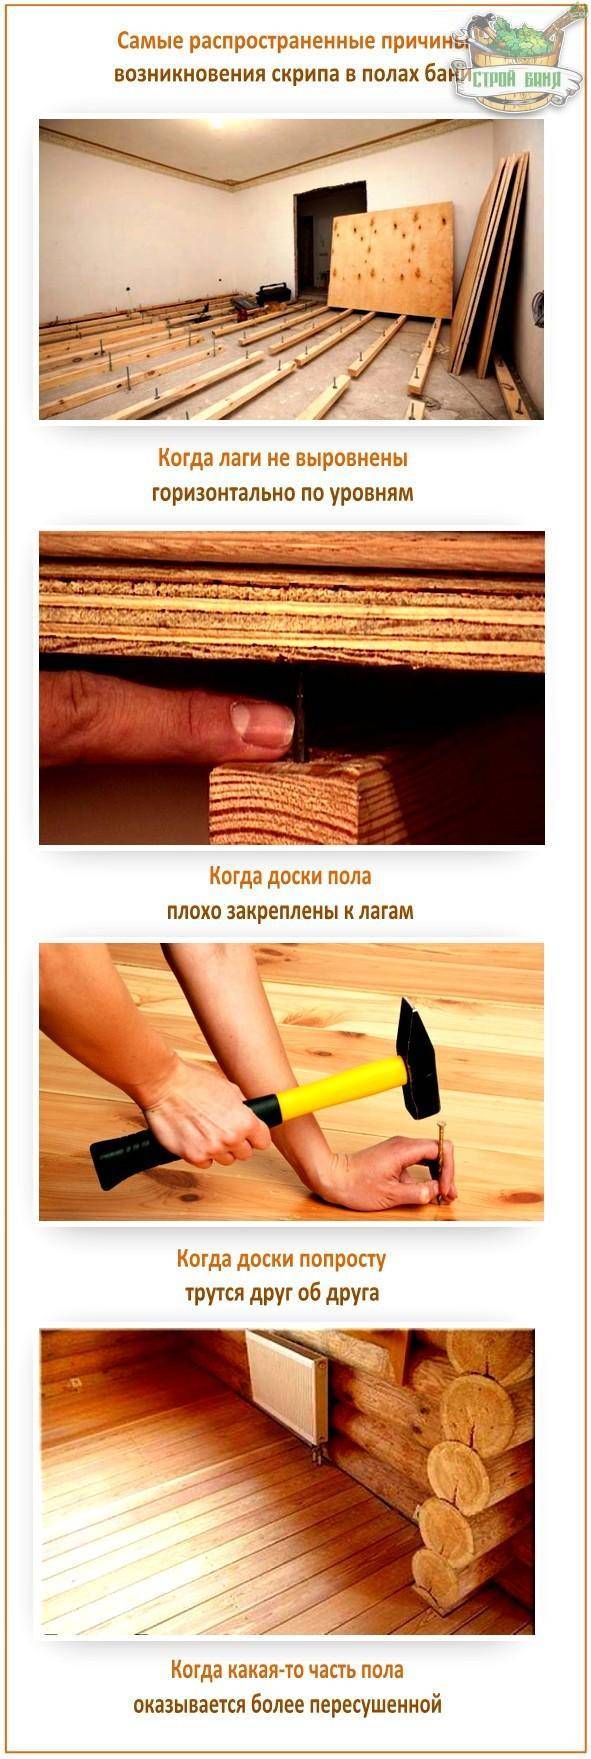 Способы устранения скрипа деревянного пола